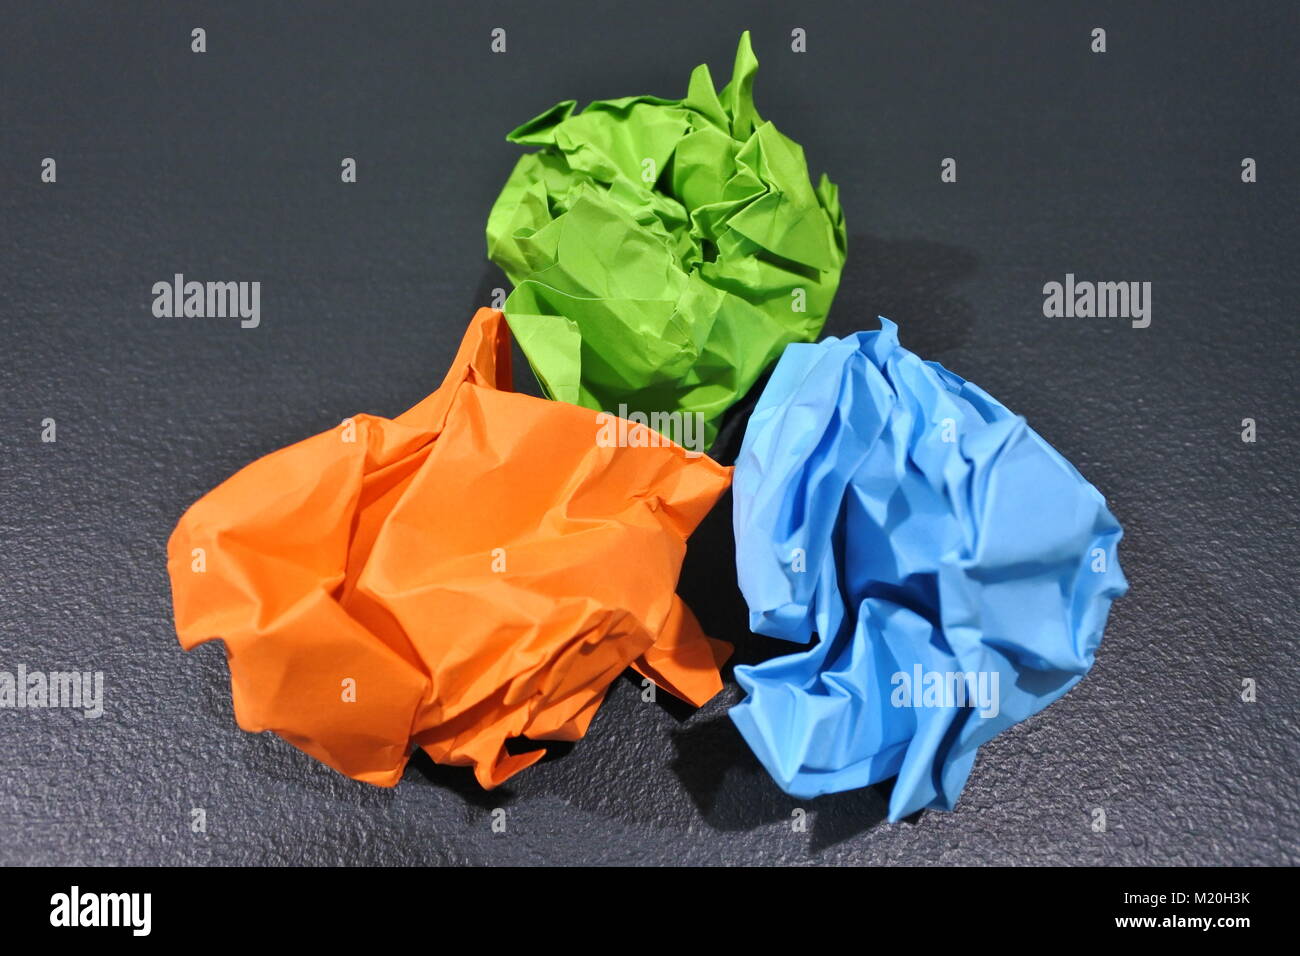 Eine lebendige Darstellung der Kreativität: Drei zerknitterte Papierkugeln in Orange, Hellgrün und Hellblau, kunstvoll in einer Dreiecksform auf einem T angeordnet Stockfoto